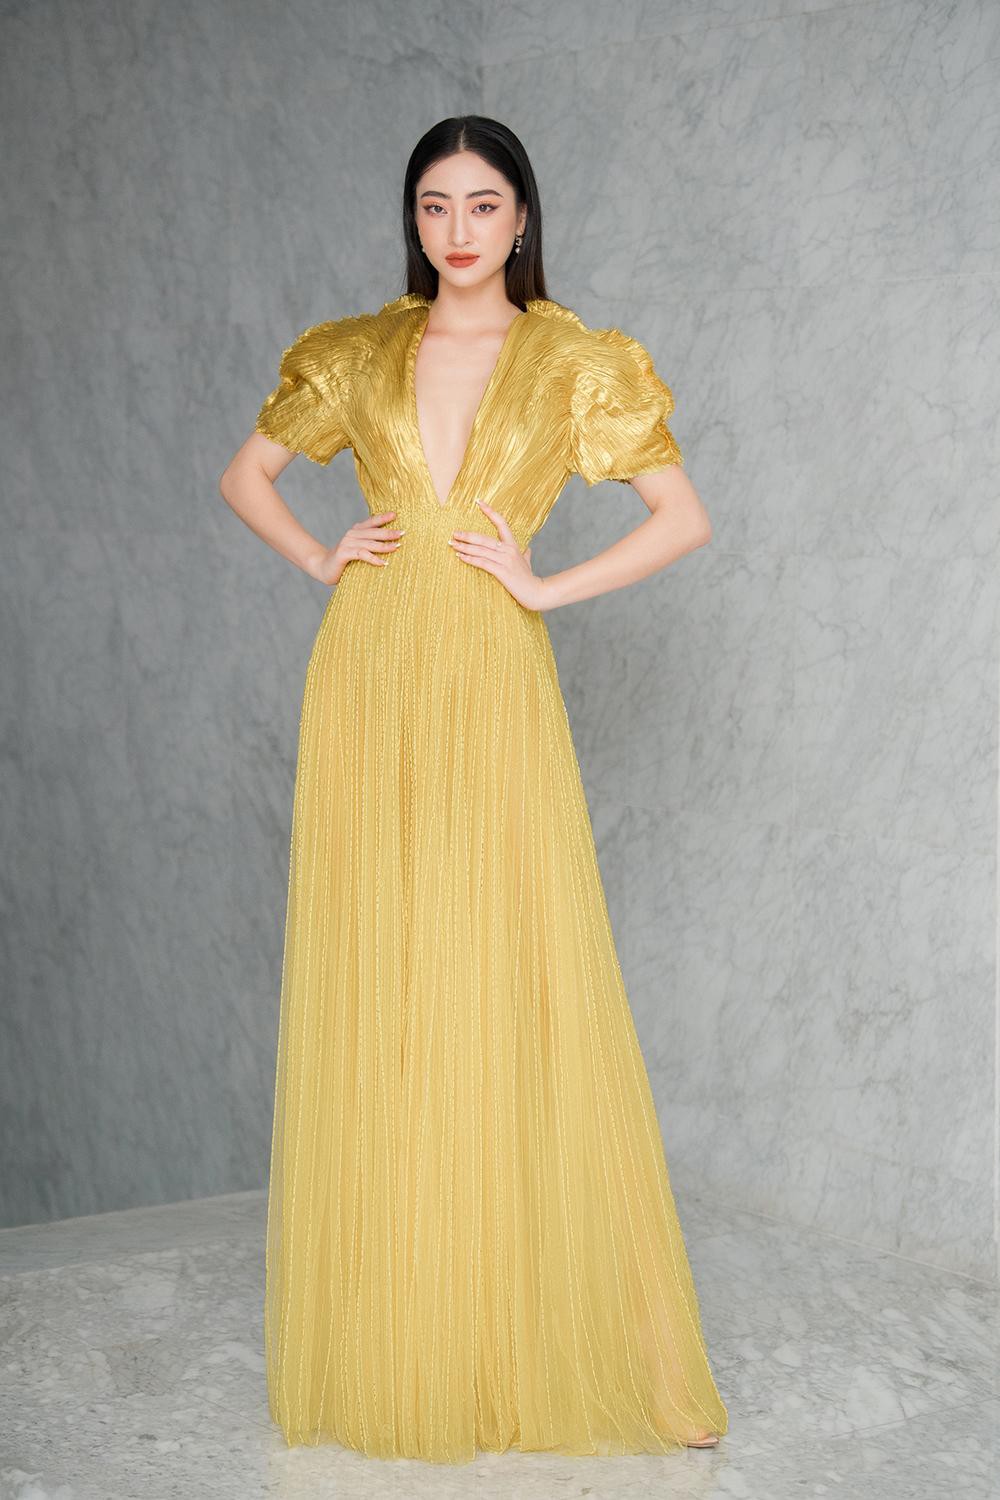 Hoa hậu Đỗ Thị Hà và Lương Thùy Linh nóng bỏng trong trang phục gam màu rực rỡ của nhà thiết kế Công Trí - Ảnh 7.